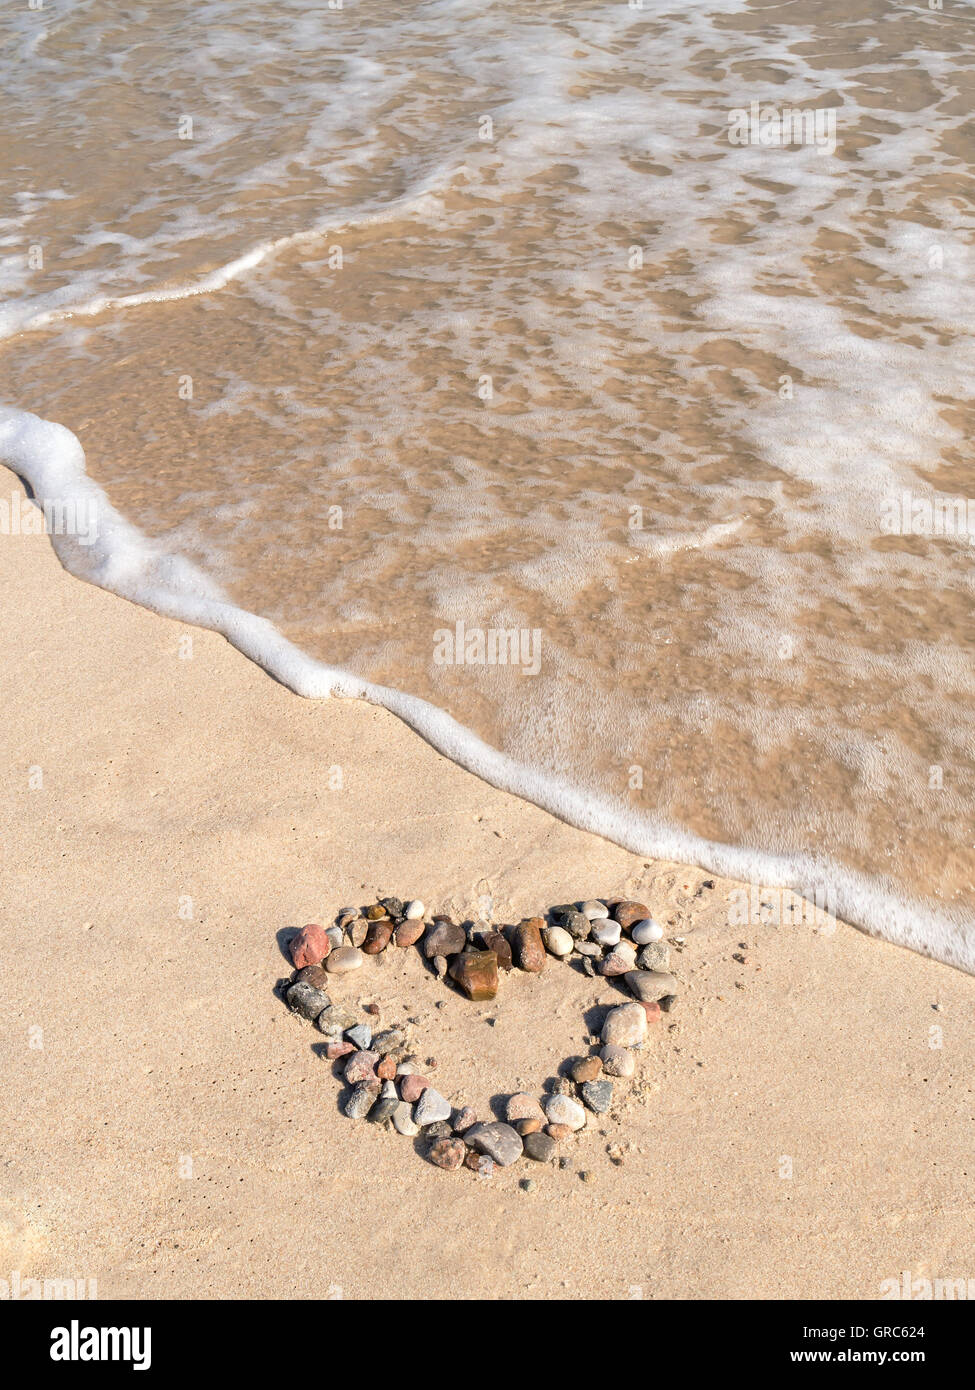 Signe du cœur organisé à partir de galets sur le sable de la plage Banque D'Images